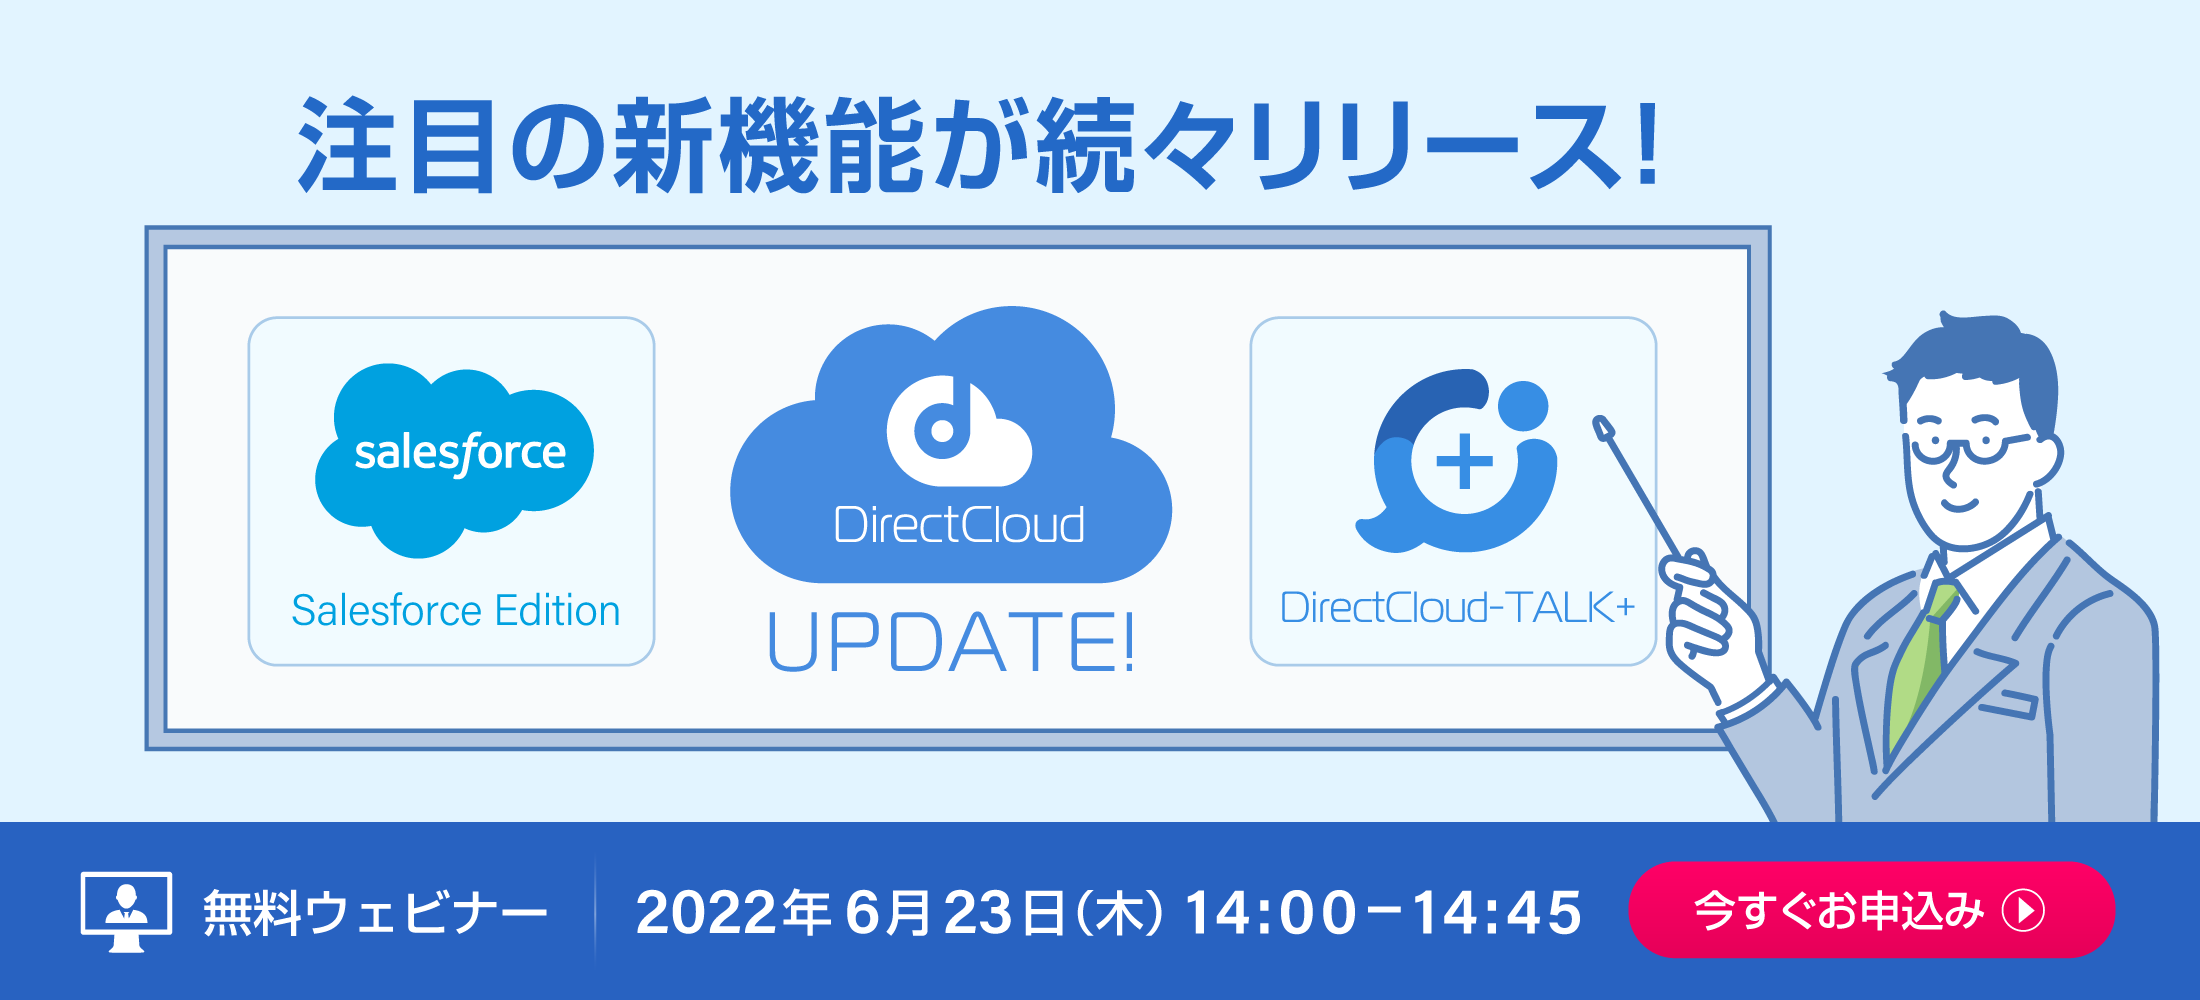 DirectCloudは6月28日(火)にアップデートを実施します。